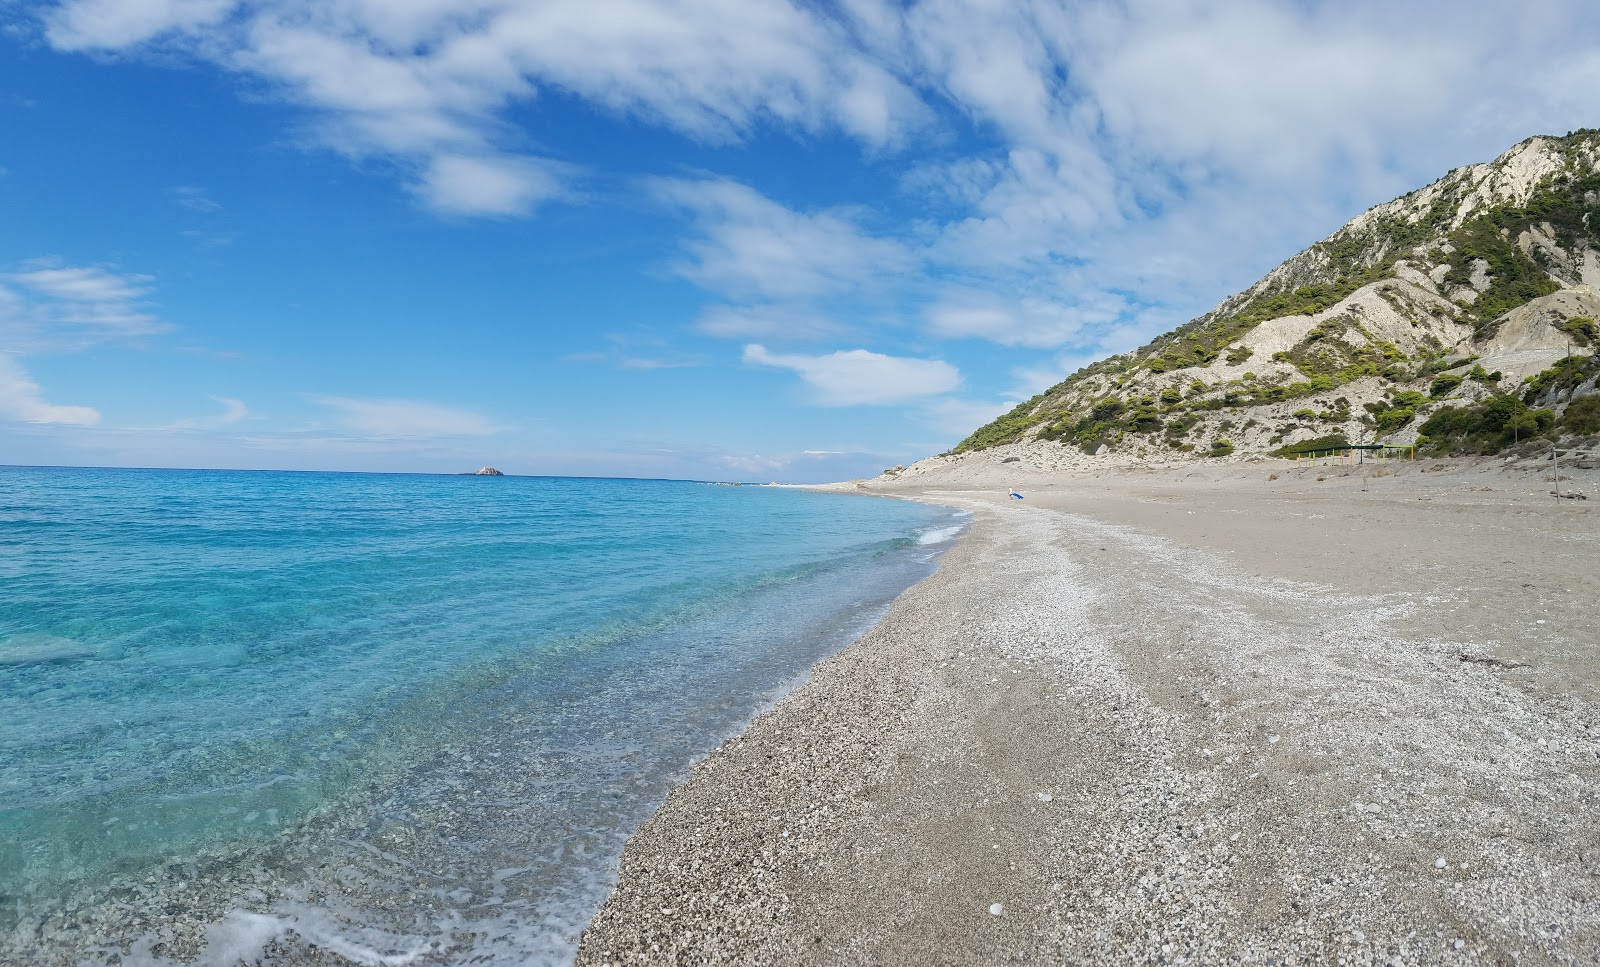 Gialos beach'in fotoğrafı koyu i̇nce çakıl yüzey ile